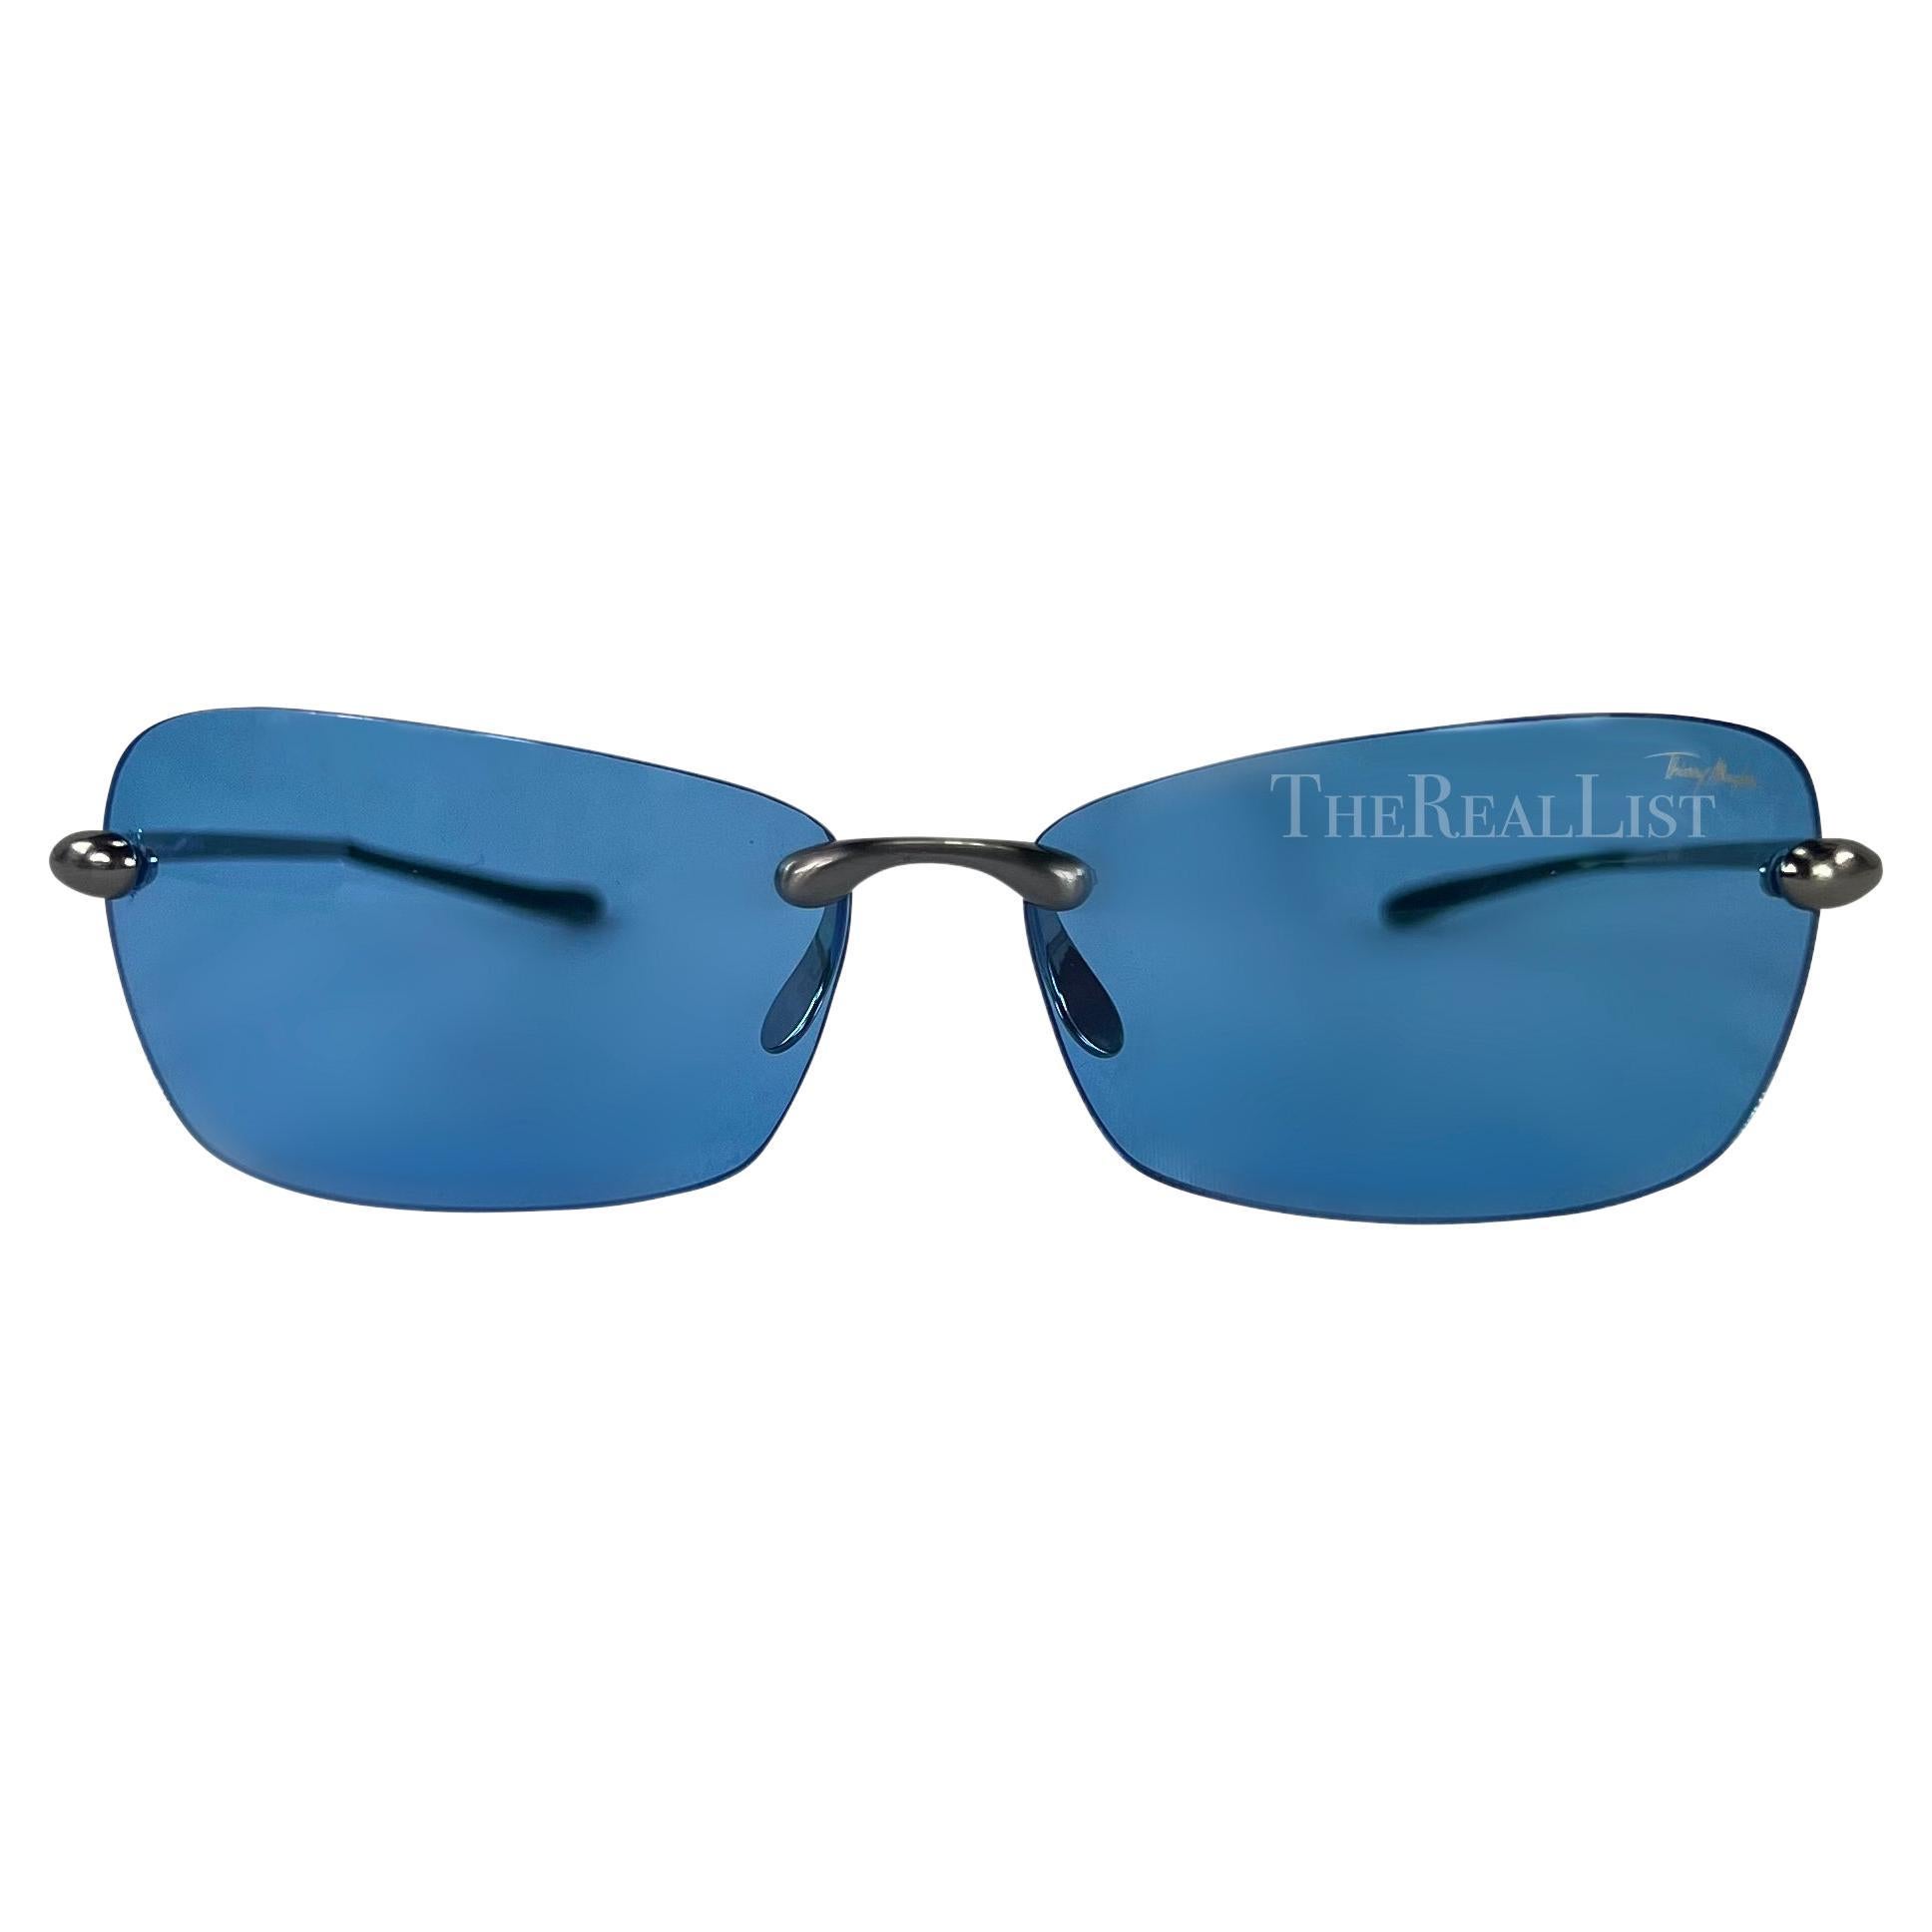 Voici une paire de lunettes de soleil Thierry Mugler sans monture, de couleur bleue, conçue par Manfred Mugler. Datant du début des années 2000, ces lunettes de soleil présentent des verres rectangulaires avec un léger œil de chat et sont complétées